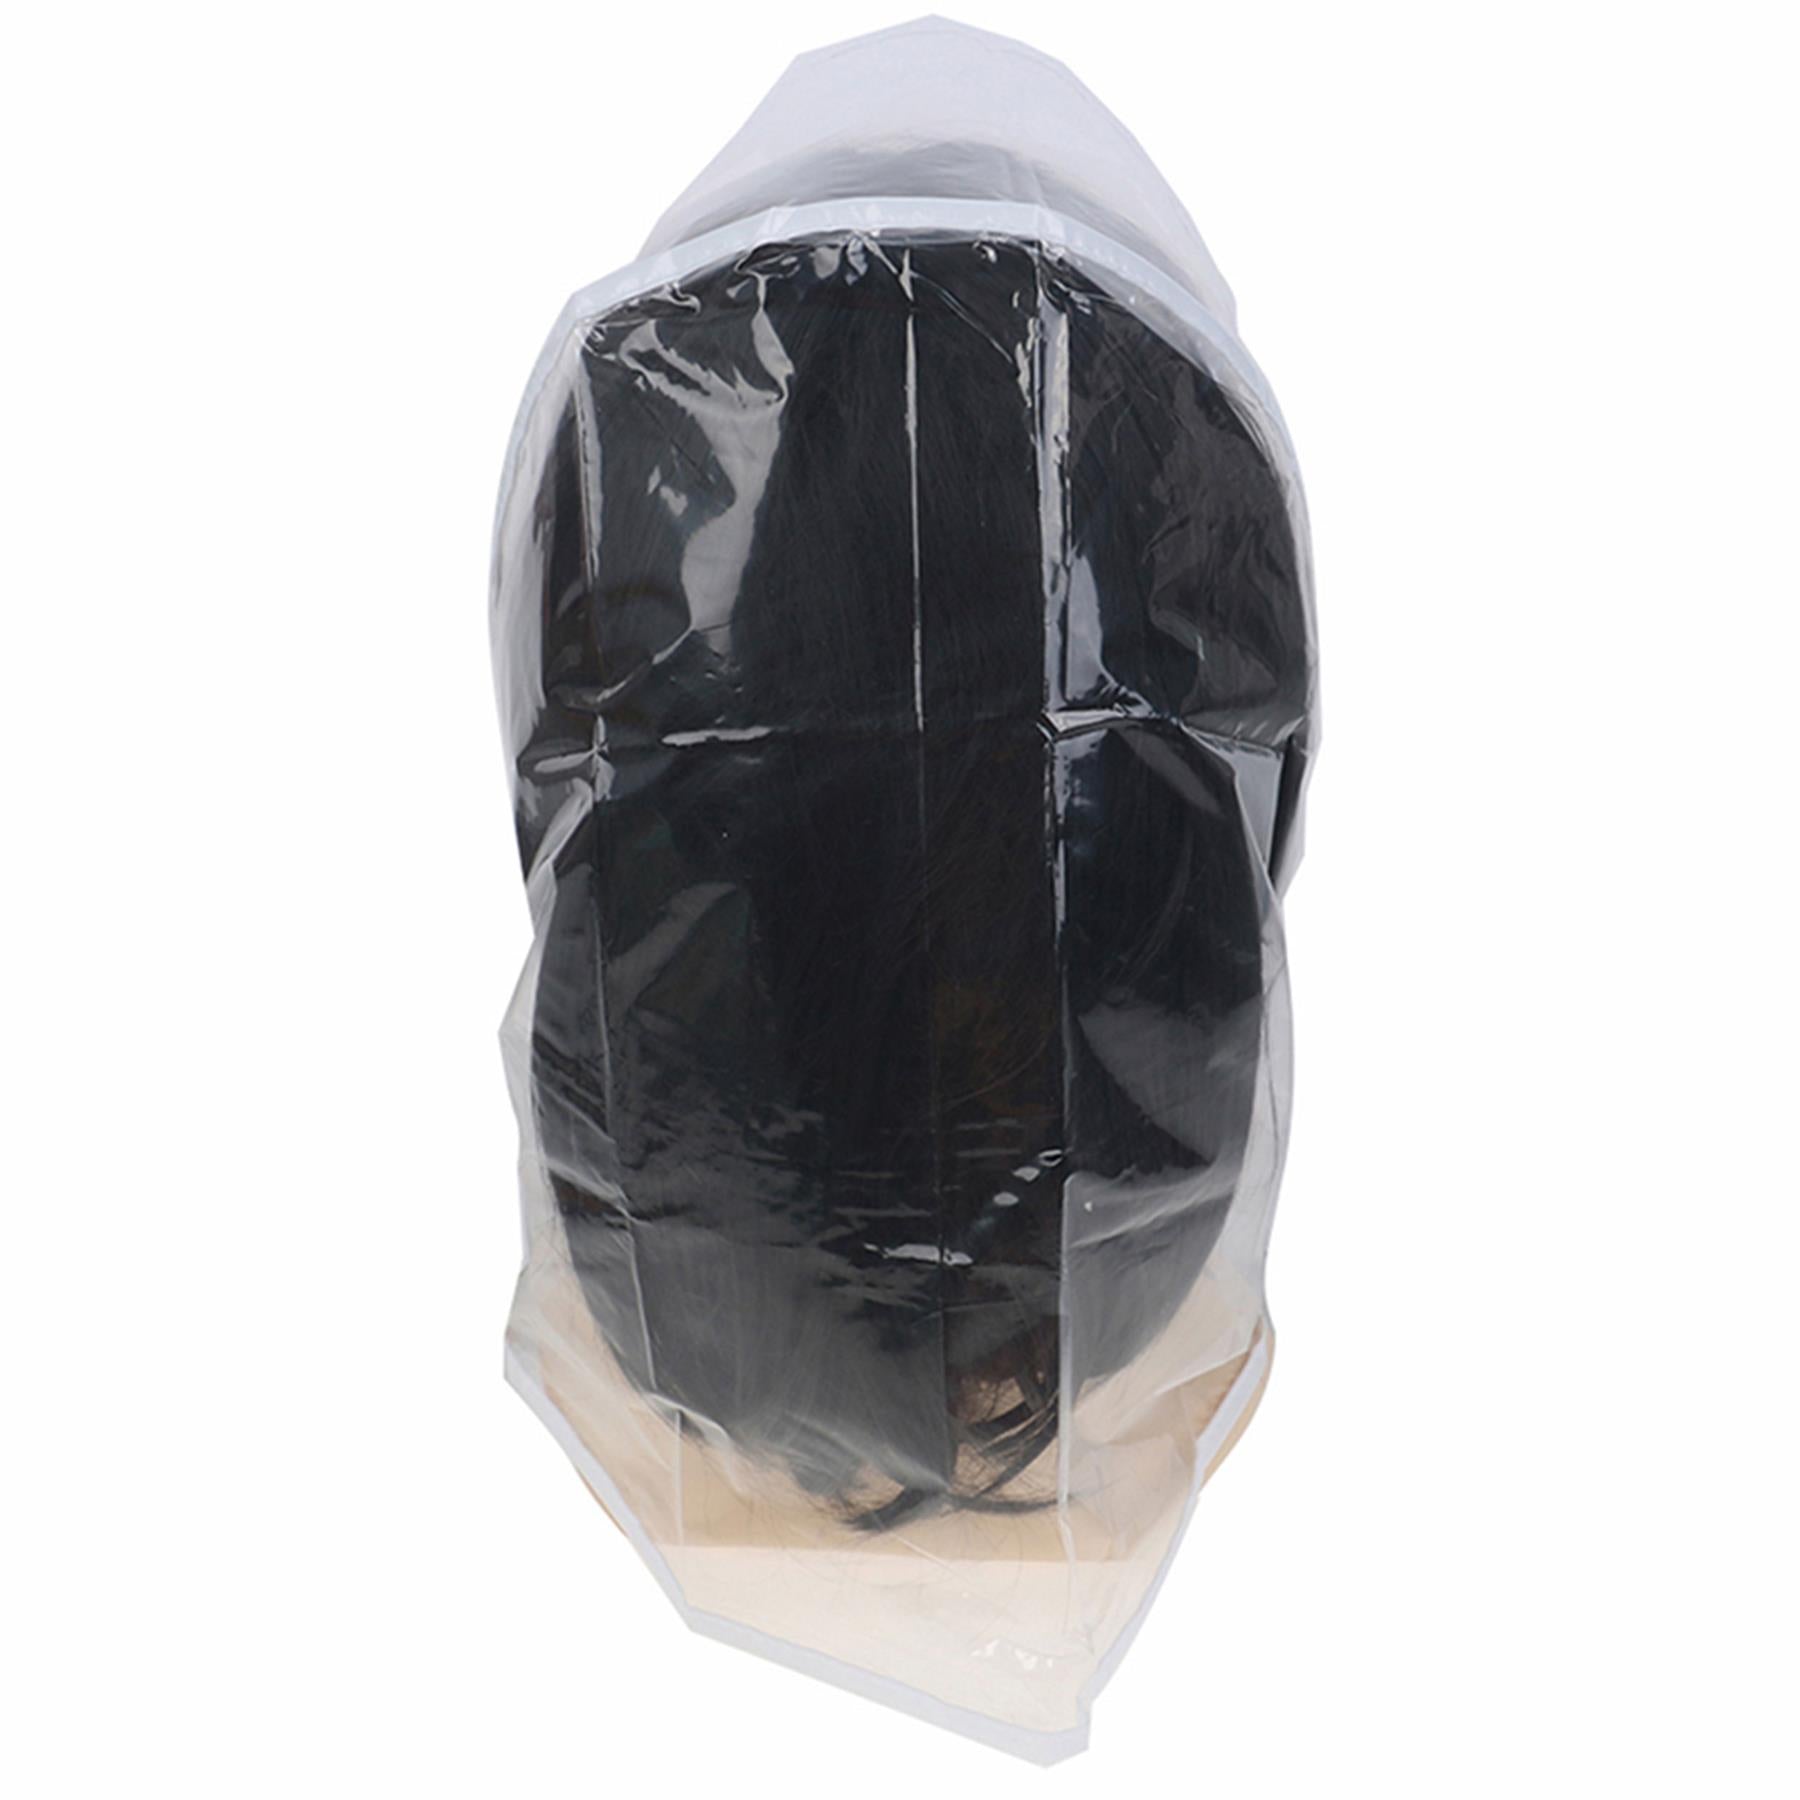 Ladies Bonnet 3 Pack Visor Clear Rain Hats Waterproof Scarf Hairstyle Protector